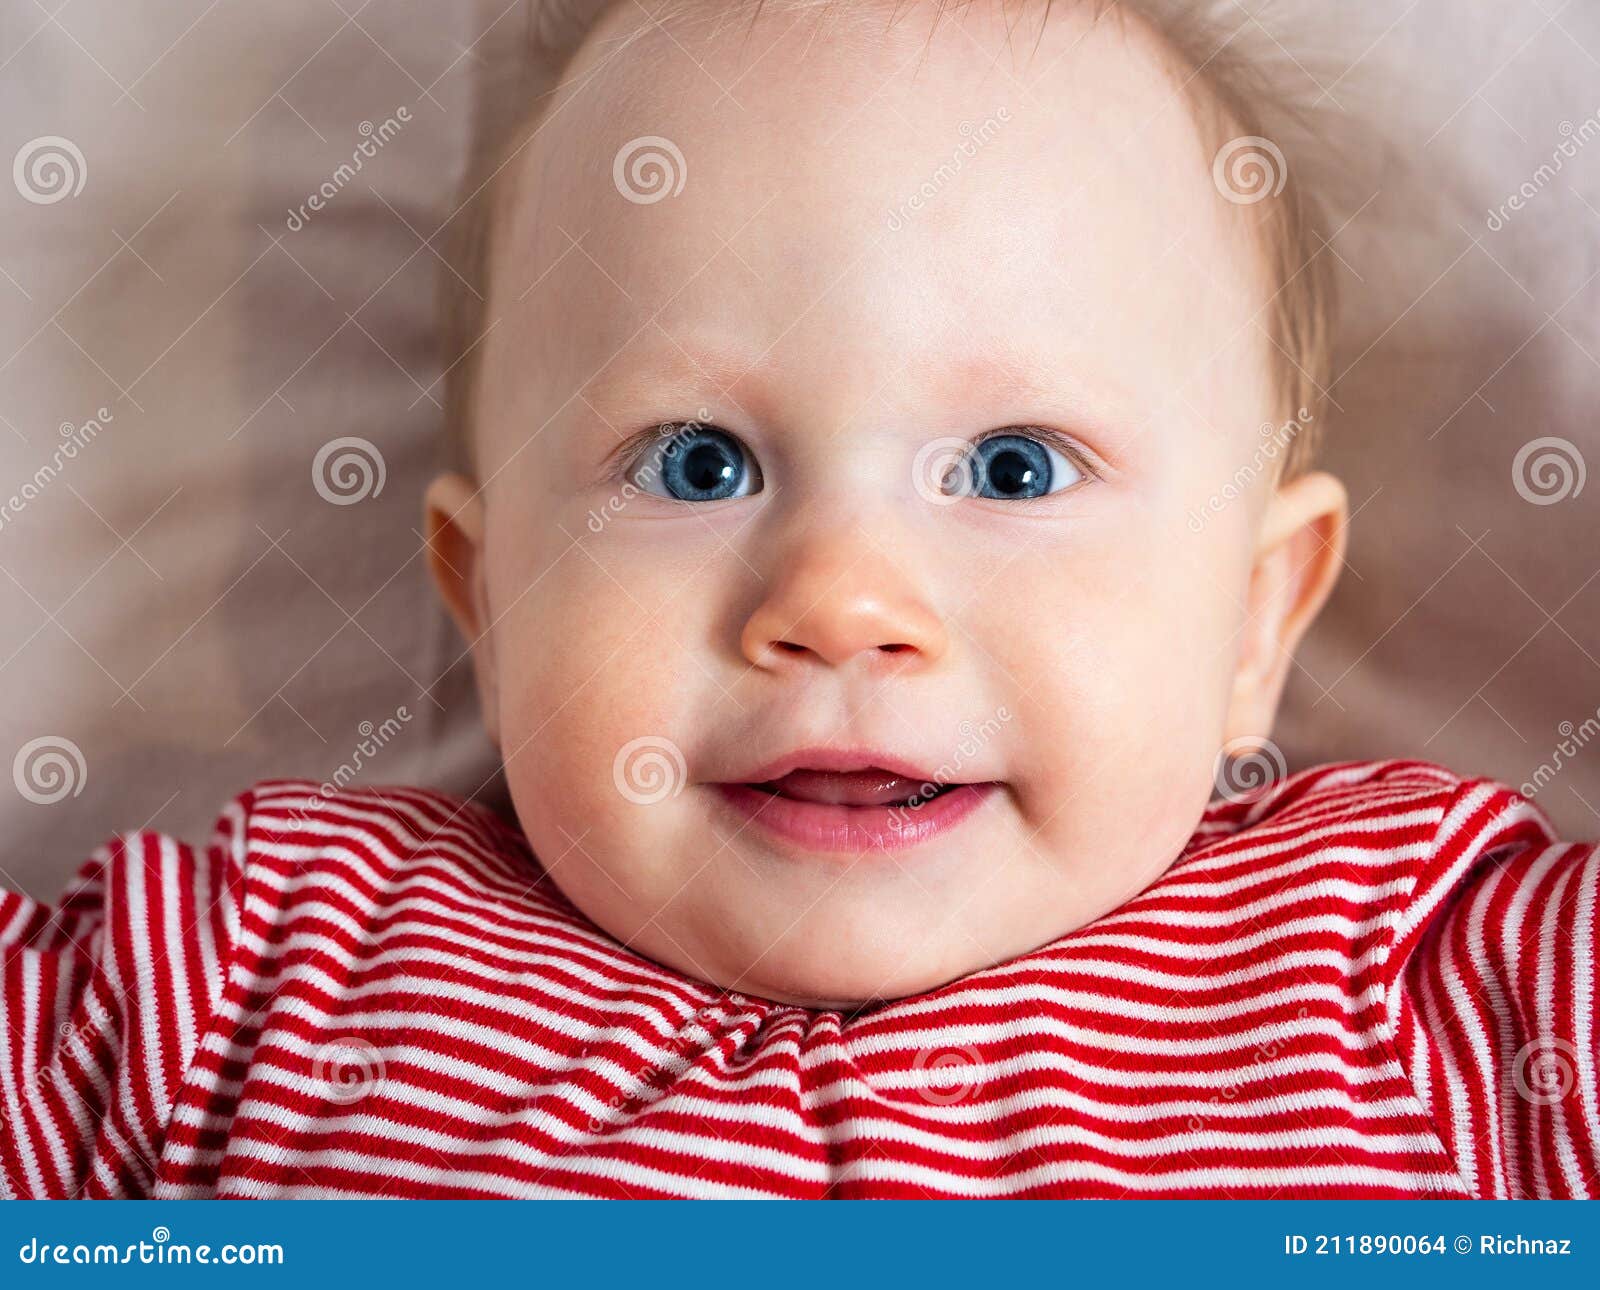 宝宝16个月，今天突然发现孩子上面两片小阴唇分别粘在两侧大阴唇，现在该怎么办？要做分离么|儿科|丁香医生